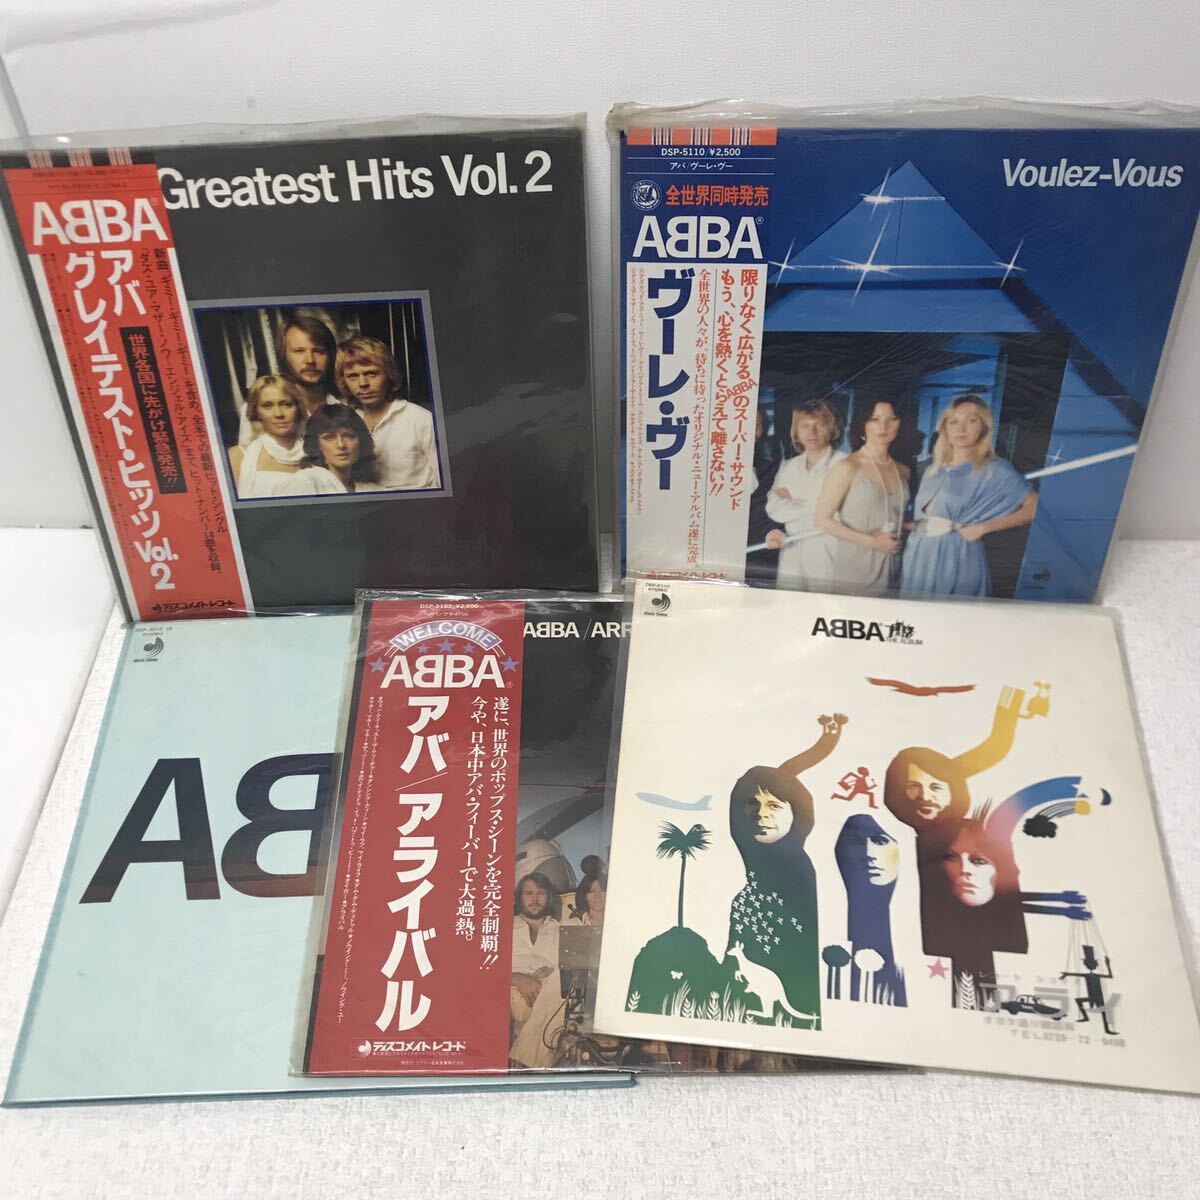 I0517A3 ABBA アバ LP レコード 5巻セット 音楽 洋楽 / グレイテスト・ヒッツ vol.2 / ヴーレ・ヴー / アライバル / THE ALBUM 他_画像1